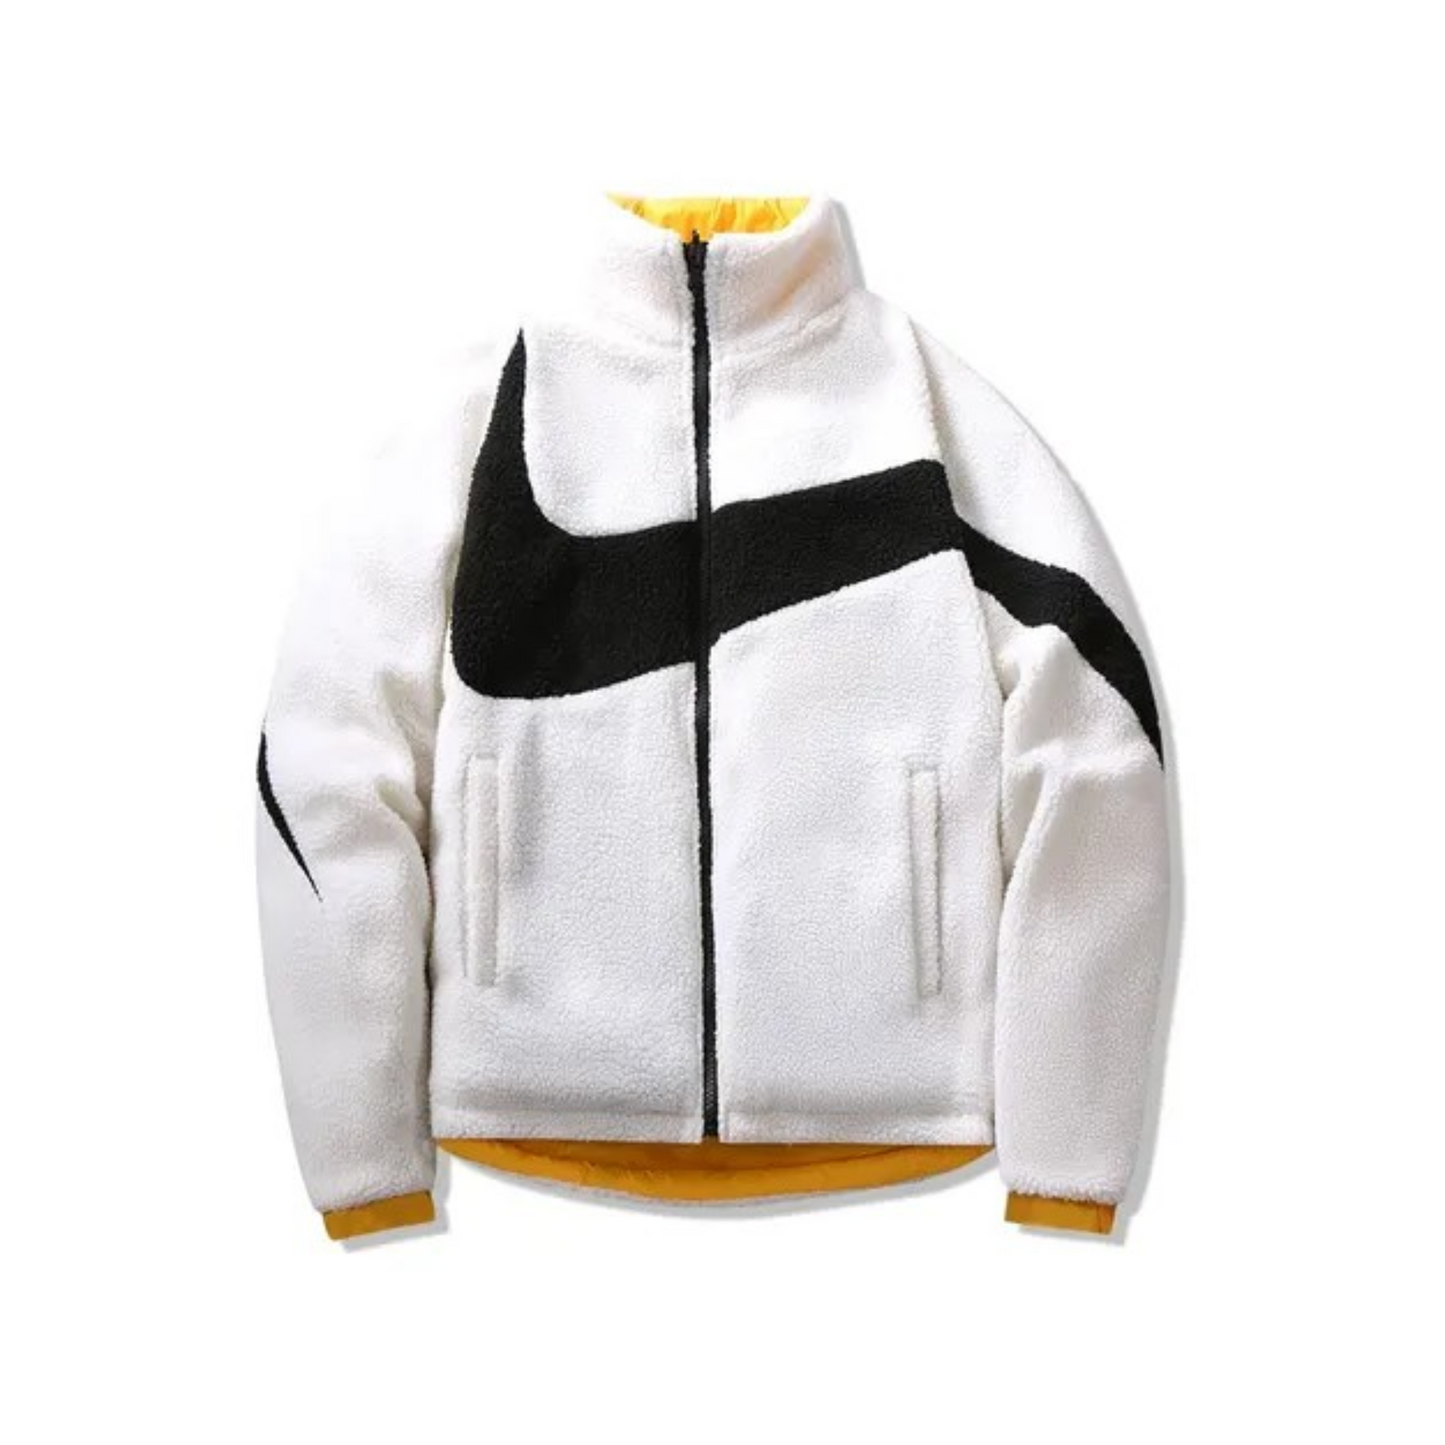 Drake x Nike NOCTA Puffer Jacket "Yellow"